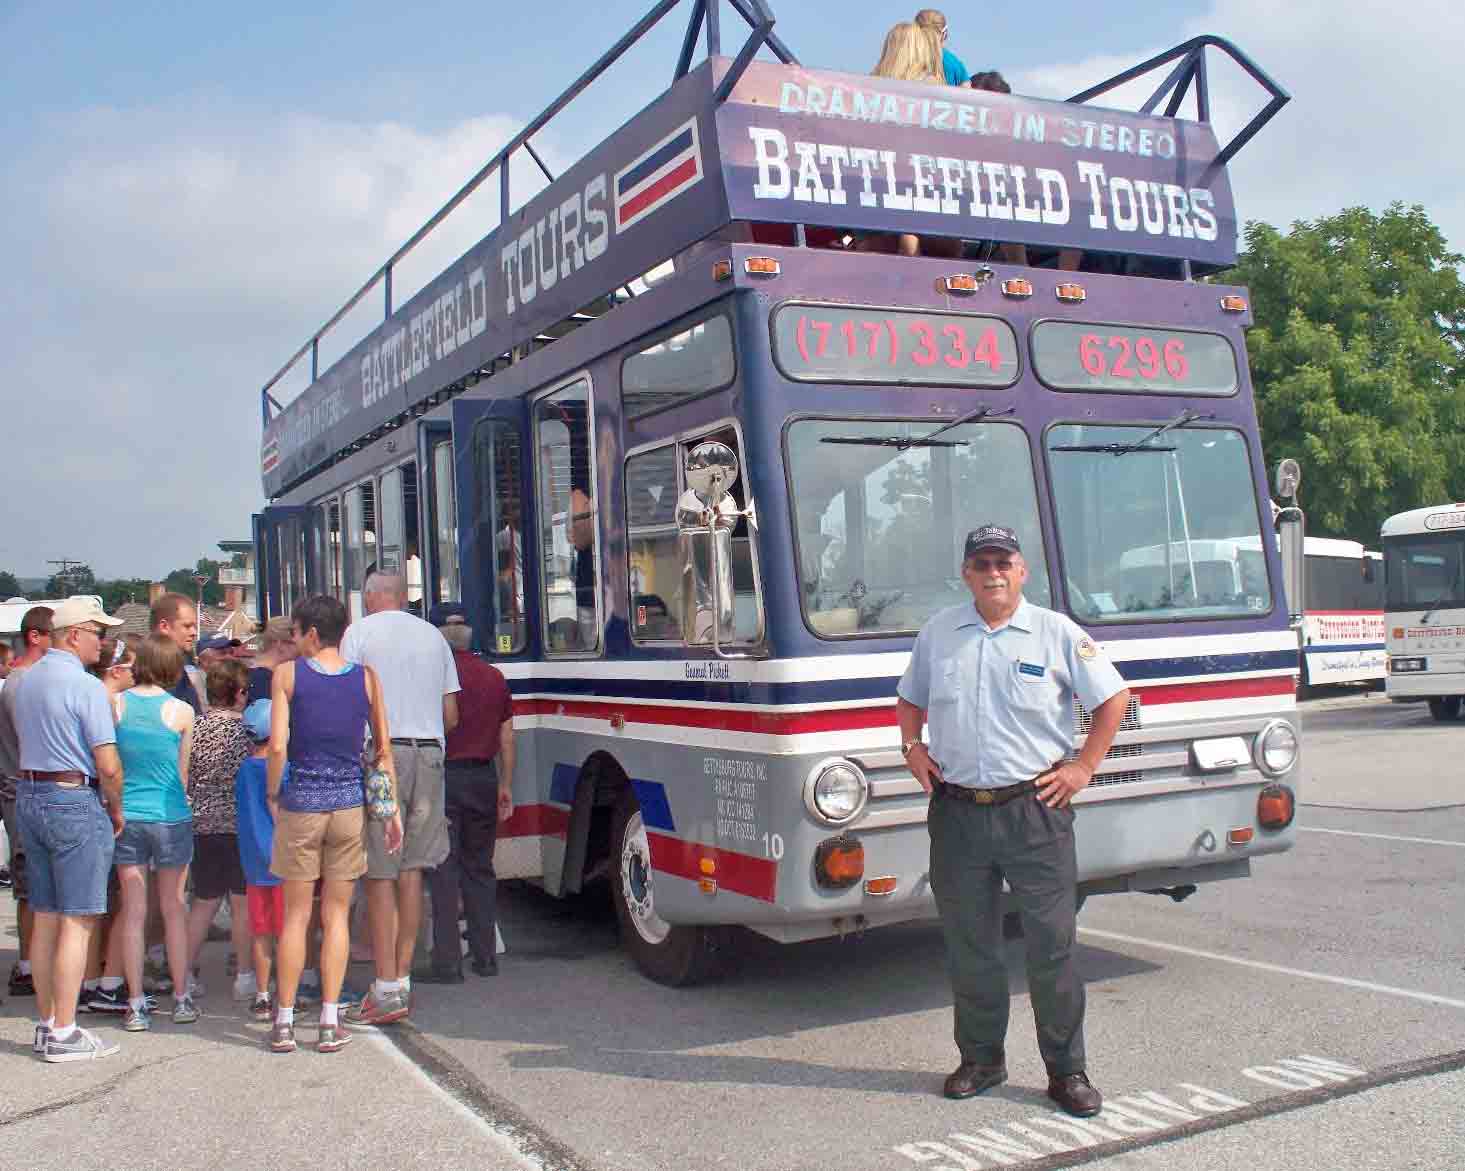 gettysburg battlefield tour bus